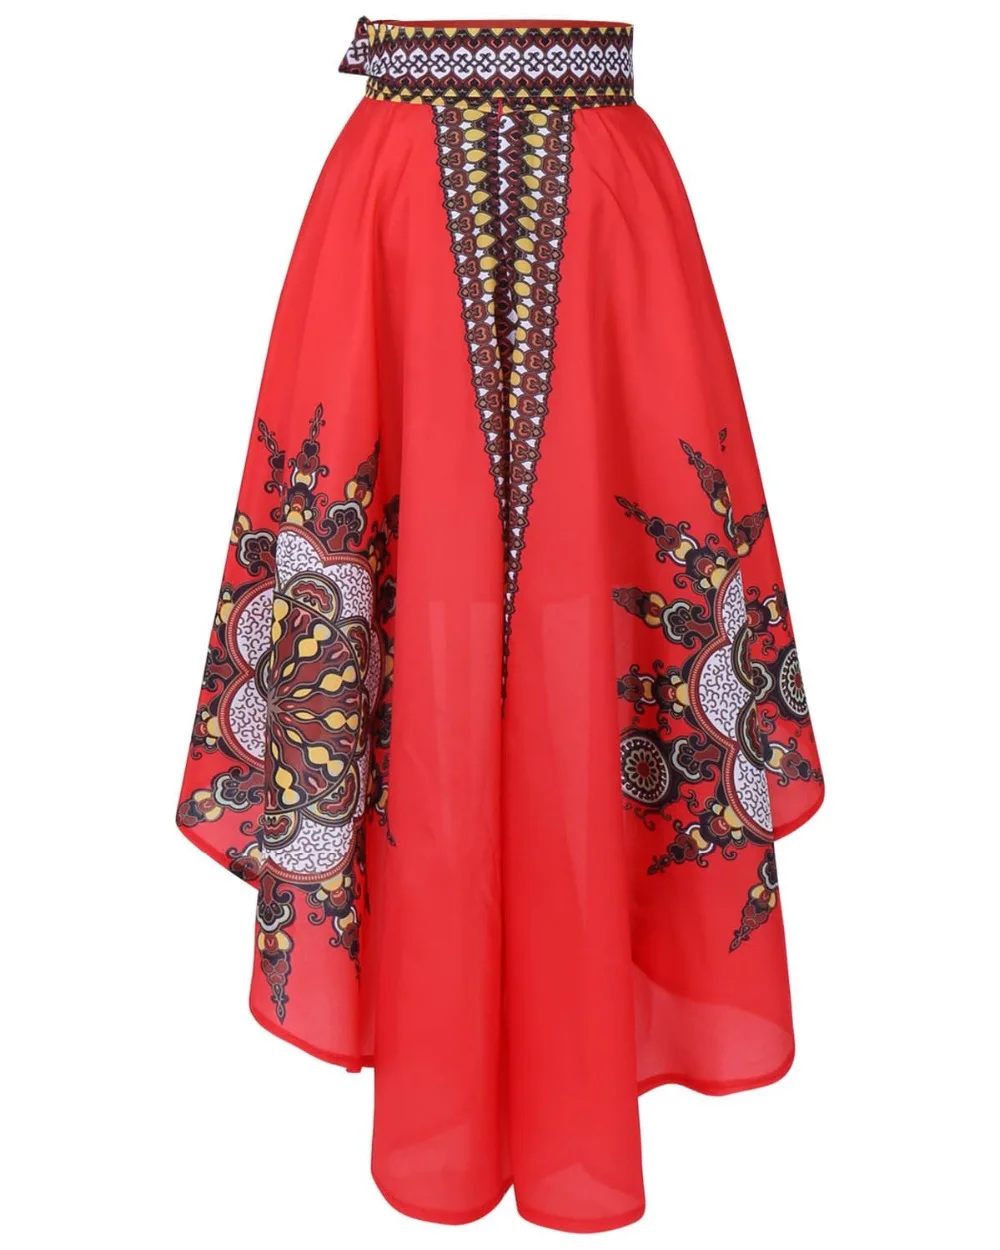 Африканское платье для женщин, традиционная одежда, африканская национальная принтованная удлиненная юбка-колокол длиной до щиколотки, популярная дизайнерская юбка 123102